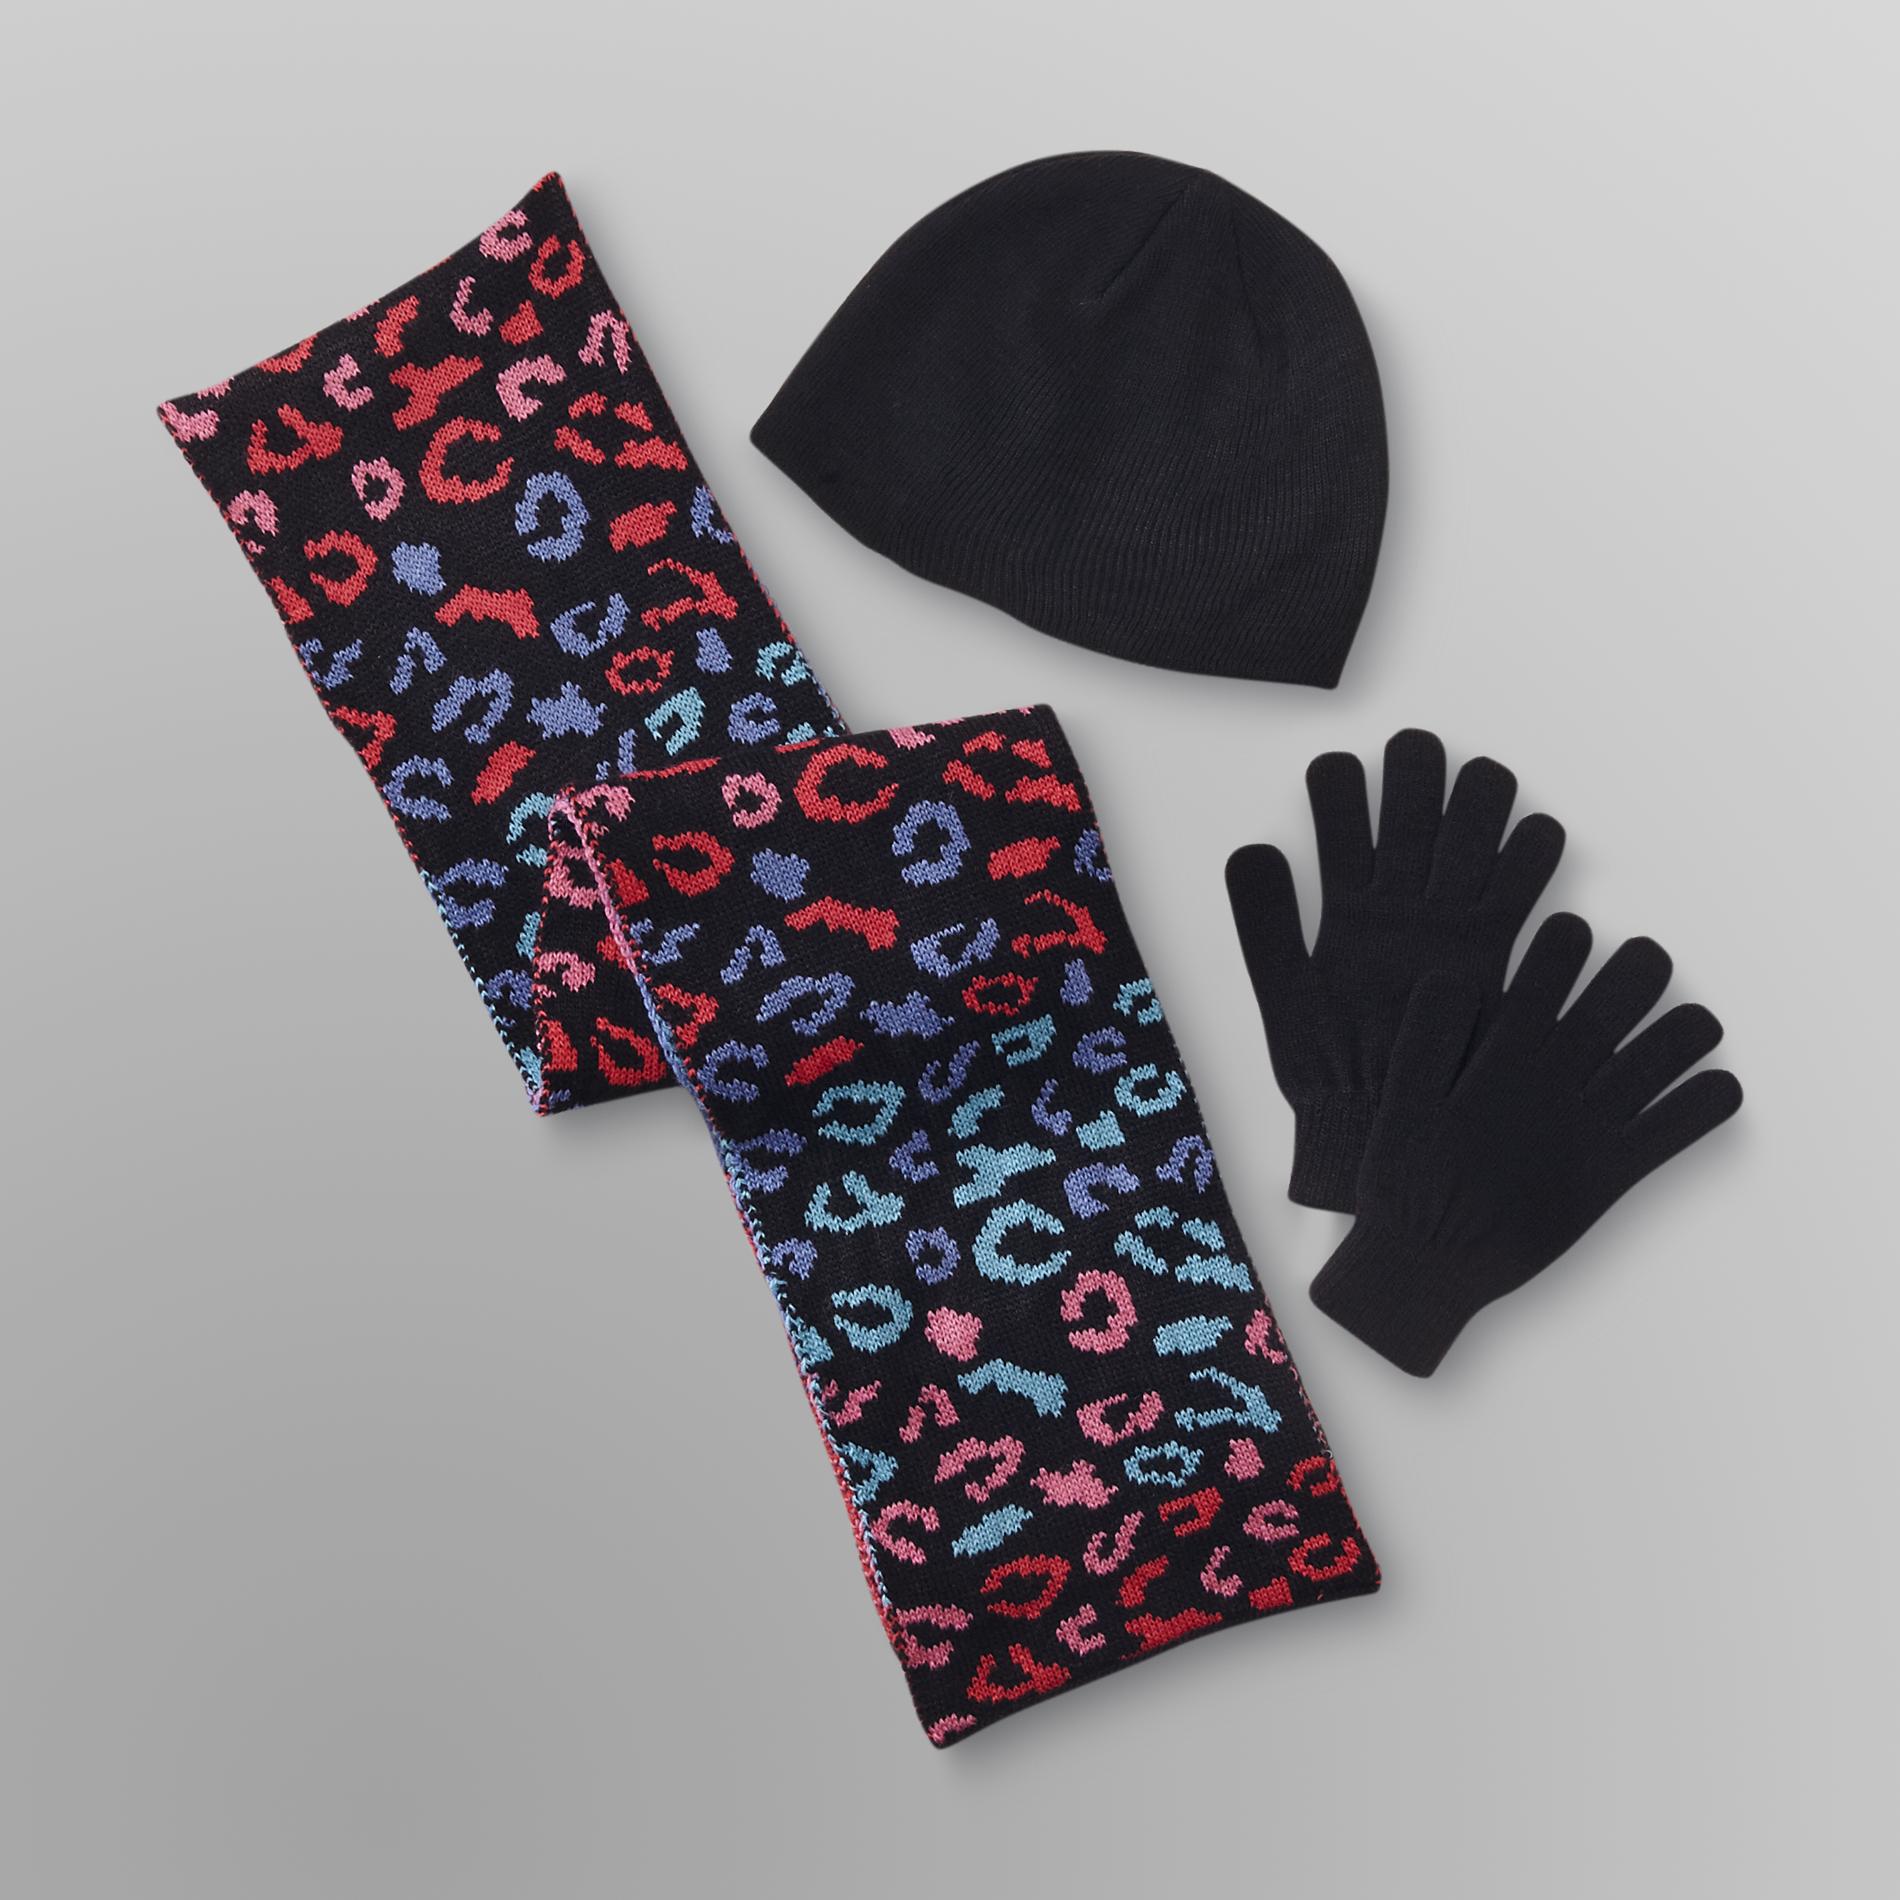 Joe Boxer Women's Winter Hat  Gloves & Scarf - Leopard Print